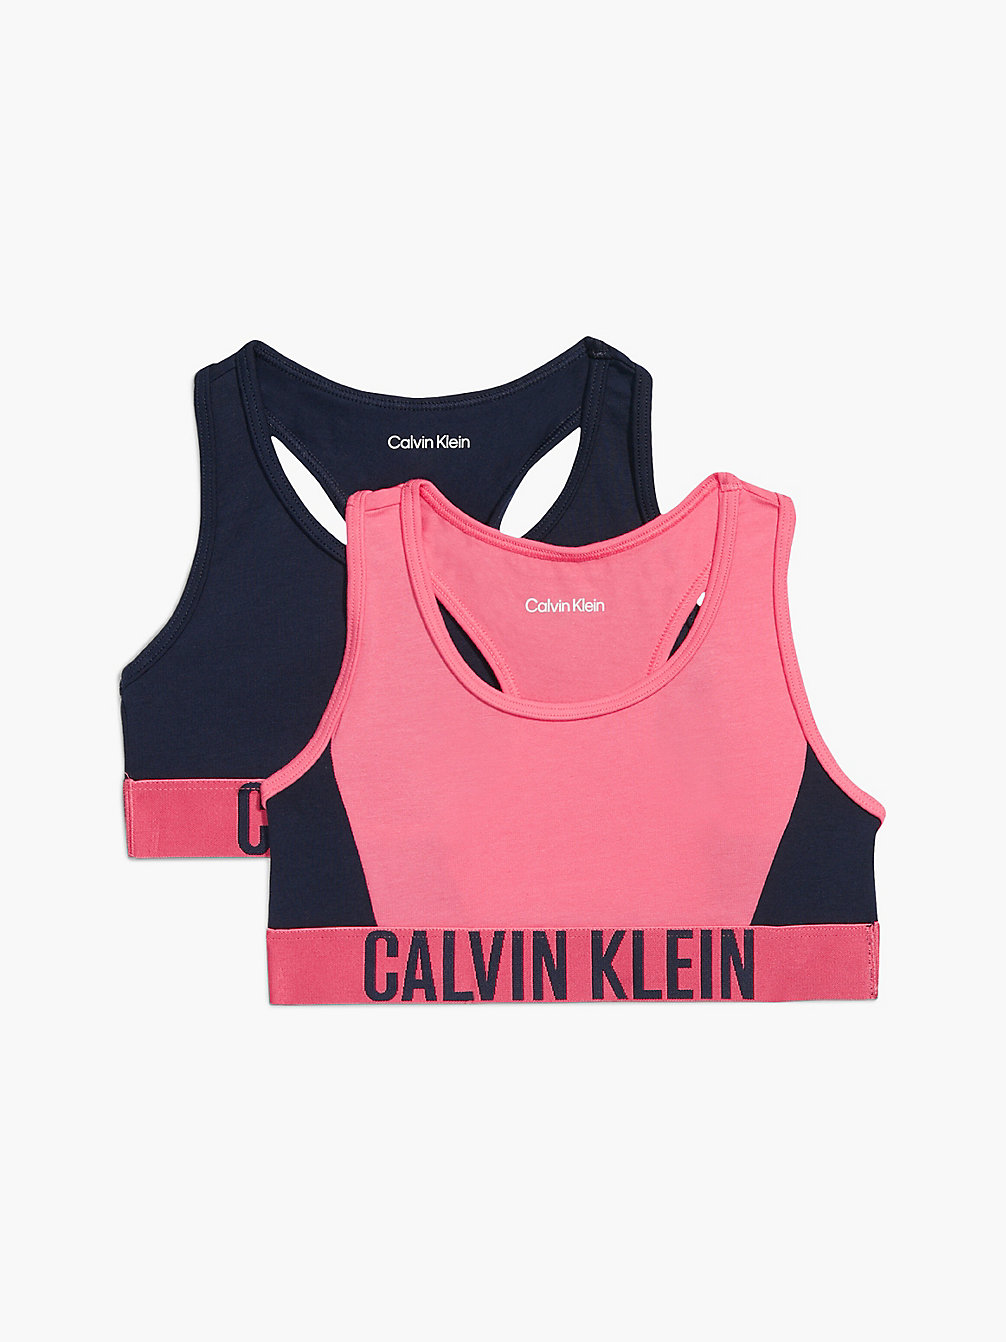 PINKDAWN/NAVYIRIS 2er-Pack Bralettes Für Mädchen – Intense Power undefined Maedchen Calvin Klein